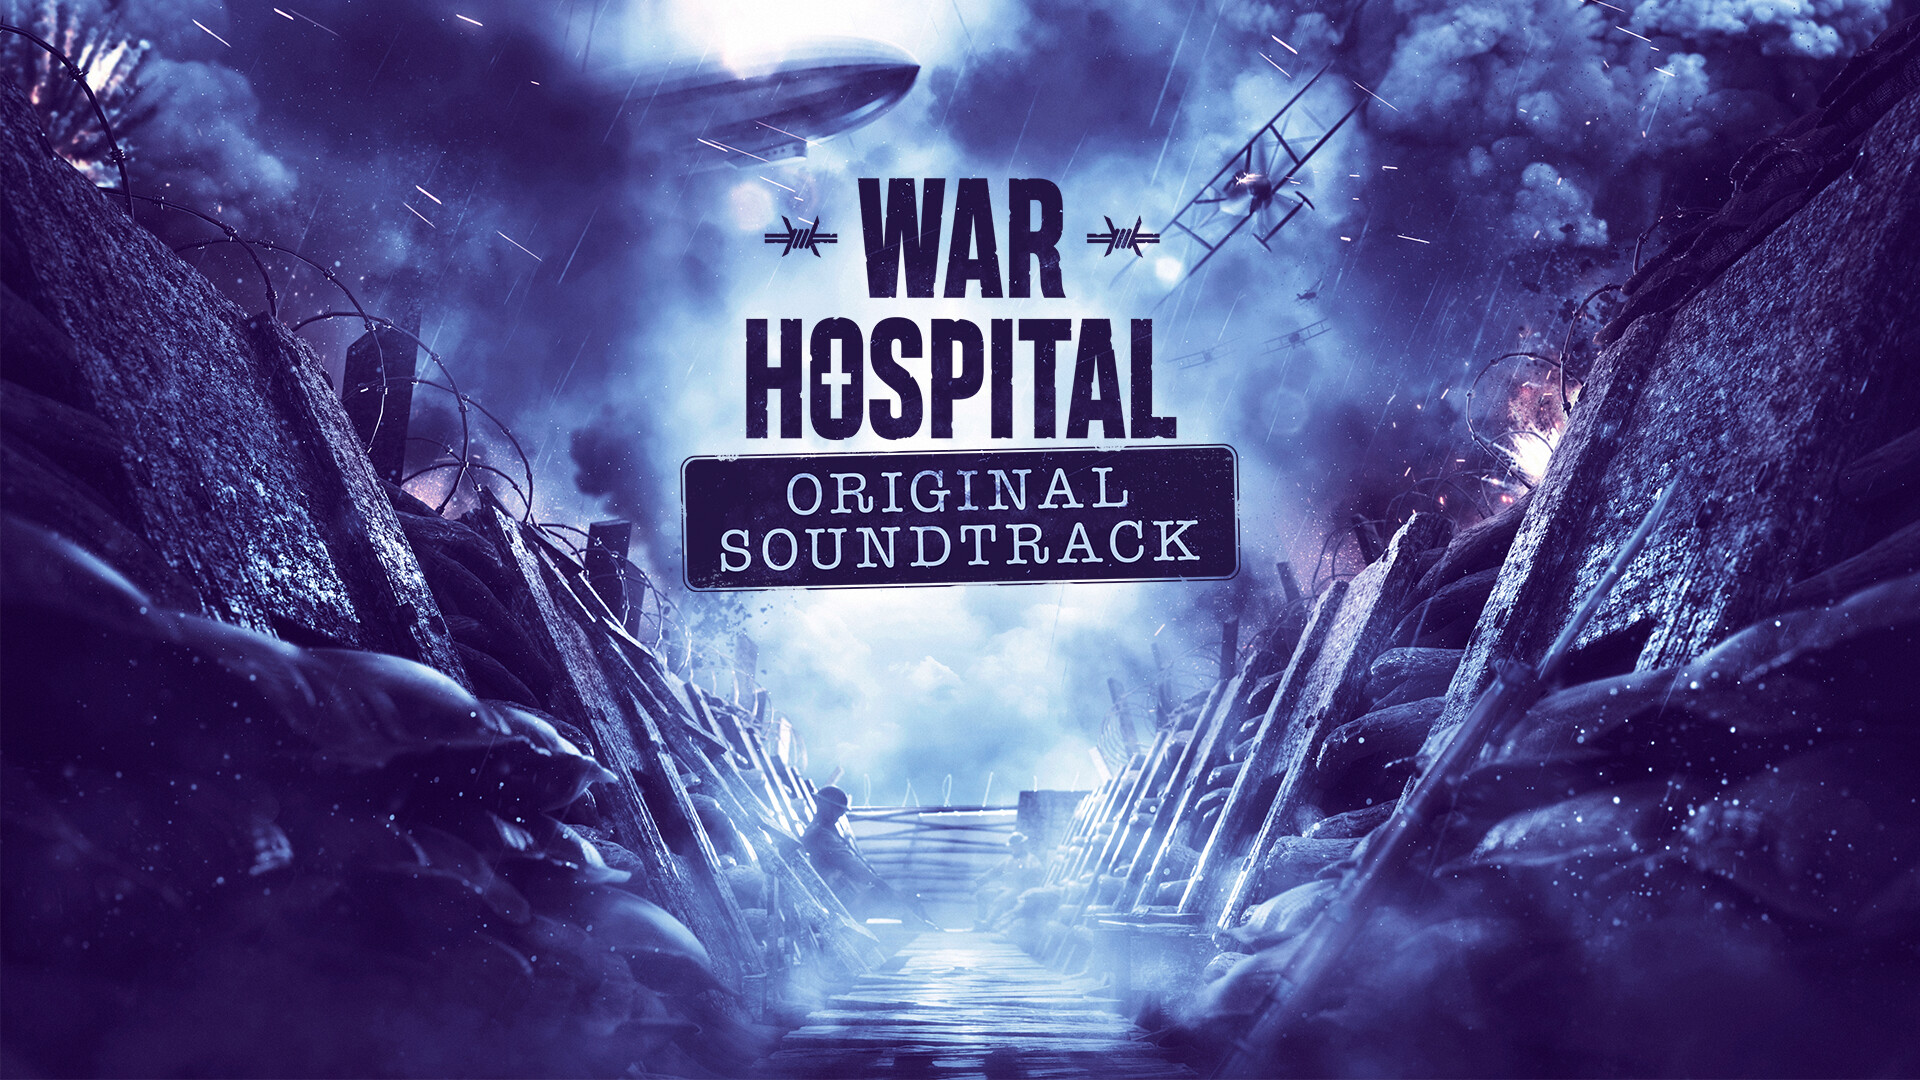 War Hospital - Original Soundtrack DLC Steam CD Key 3.38 $